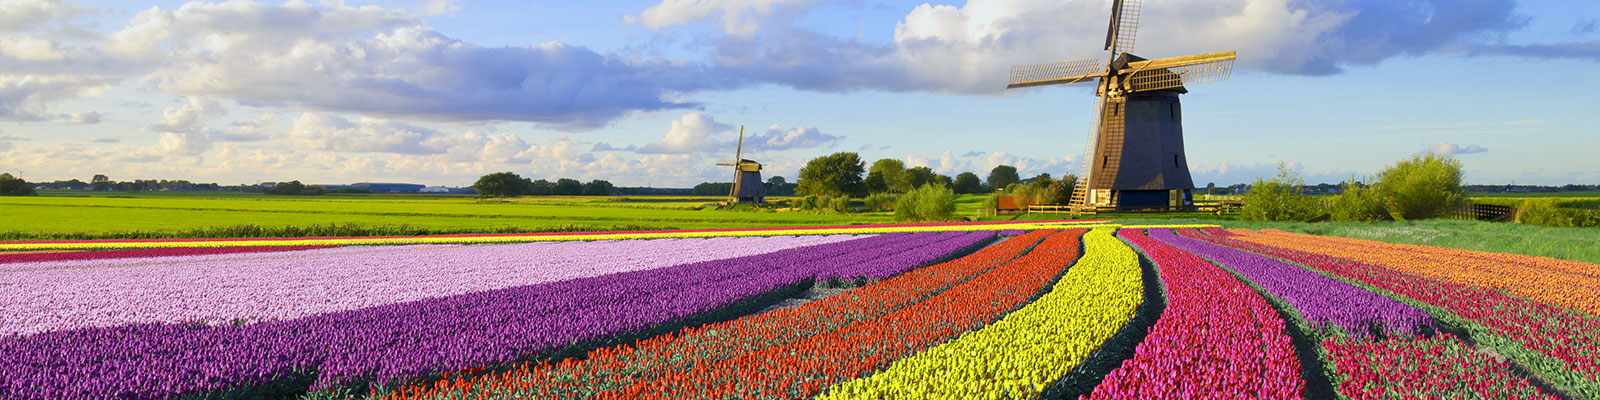 Ámsterdam, tulipanes y viajes